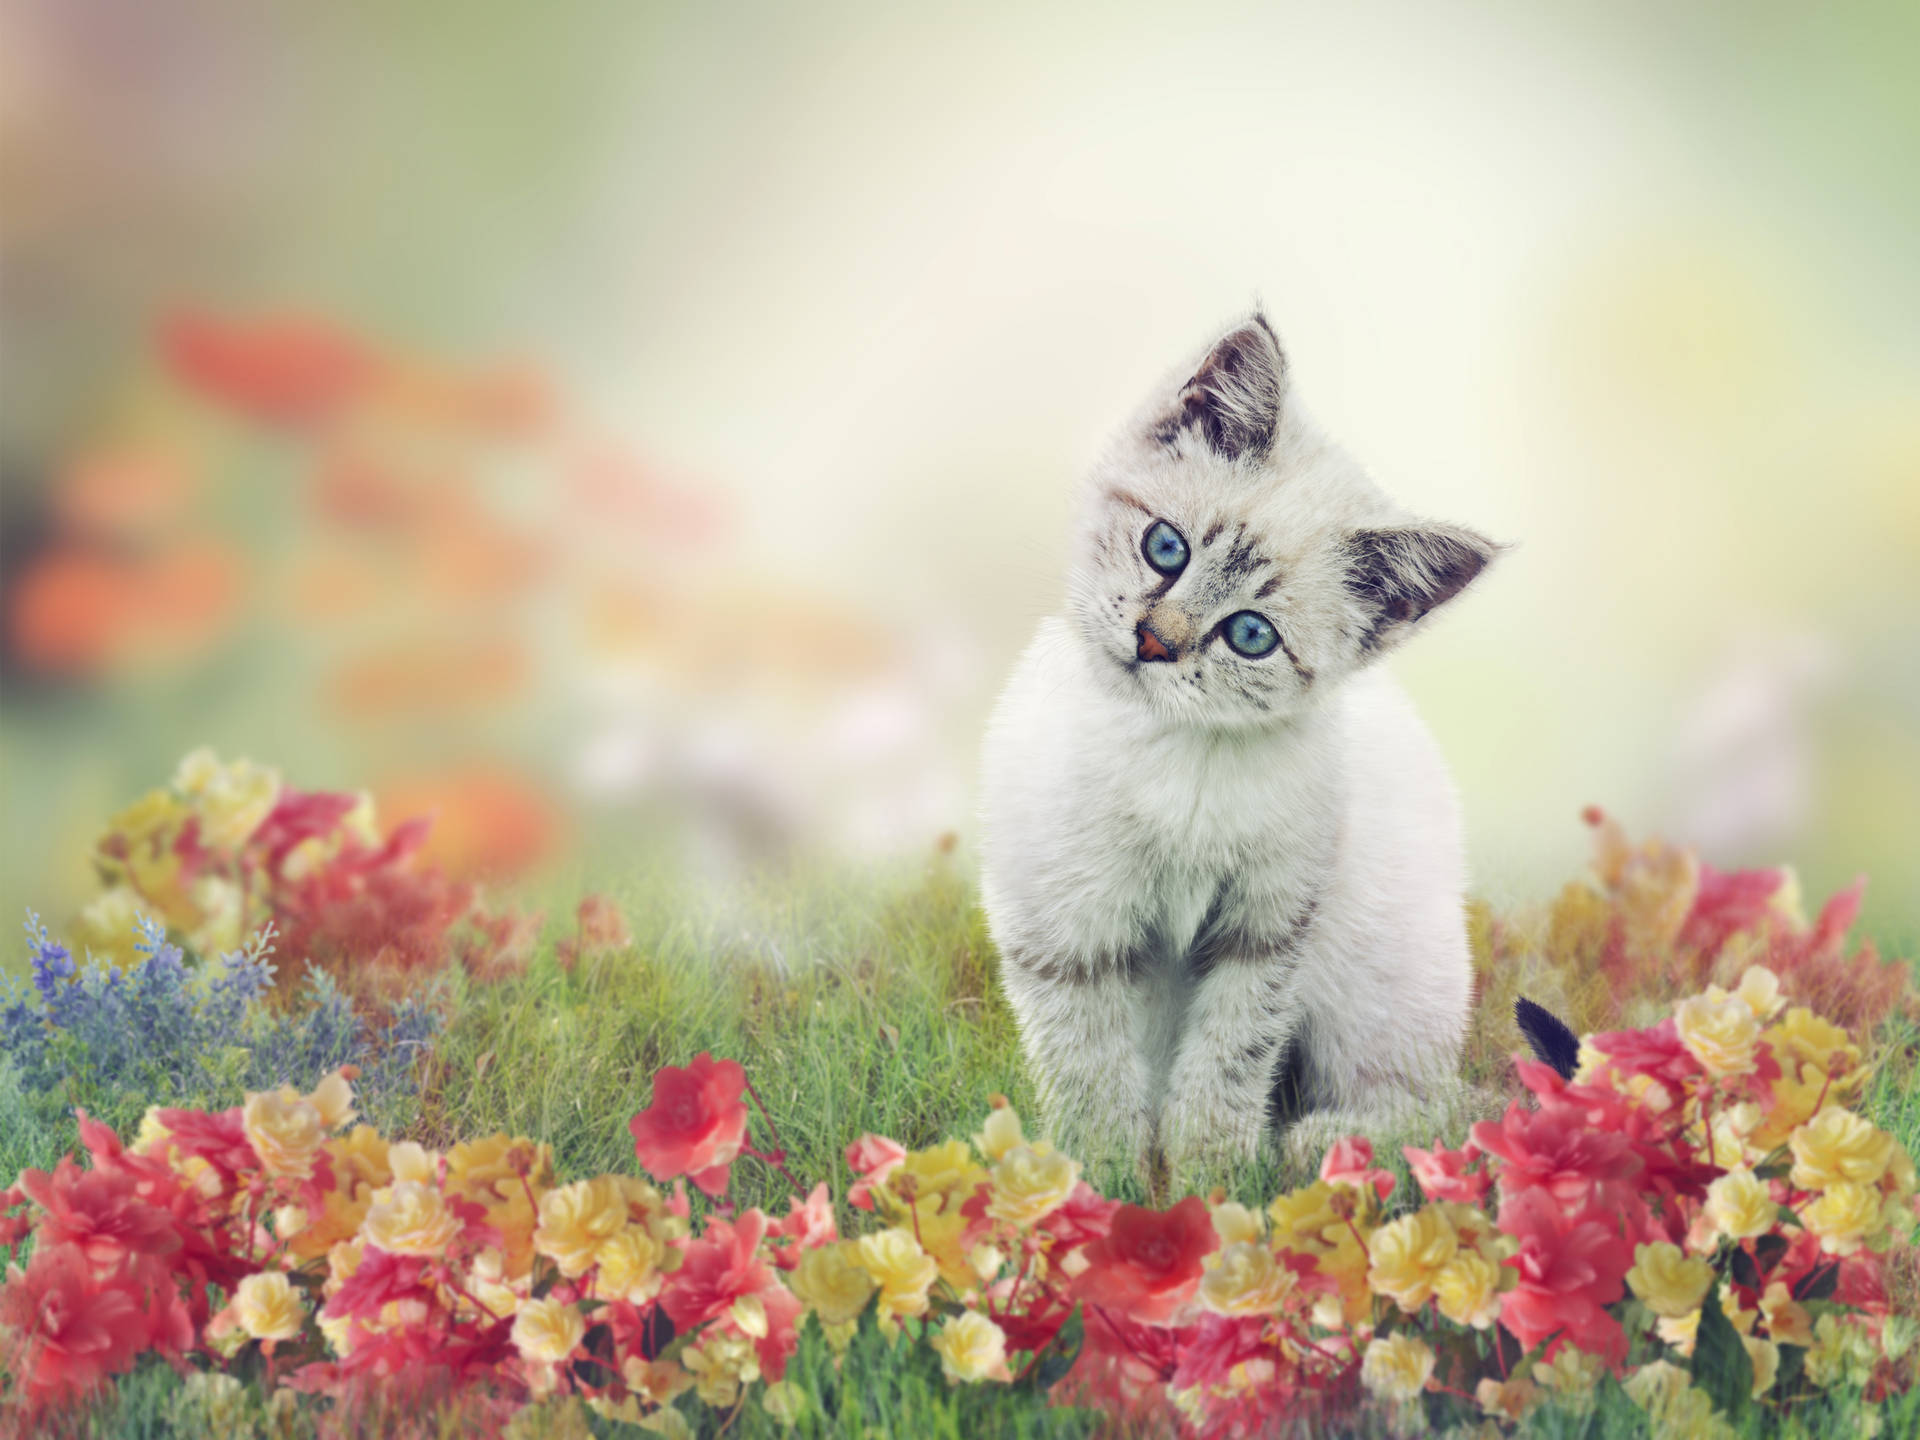 Cute Cat On Flower Field Wallpaper